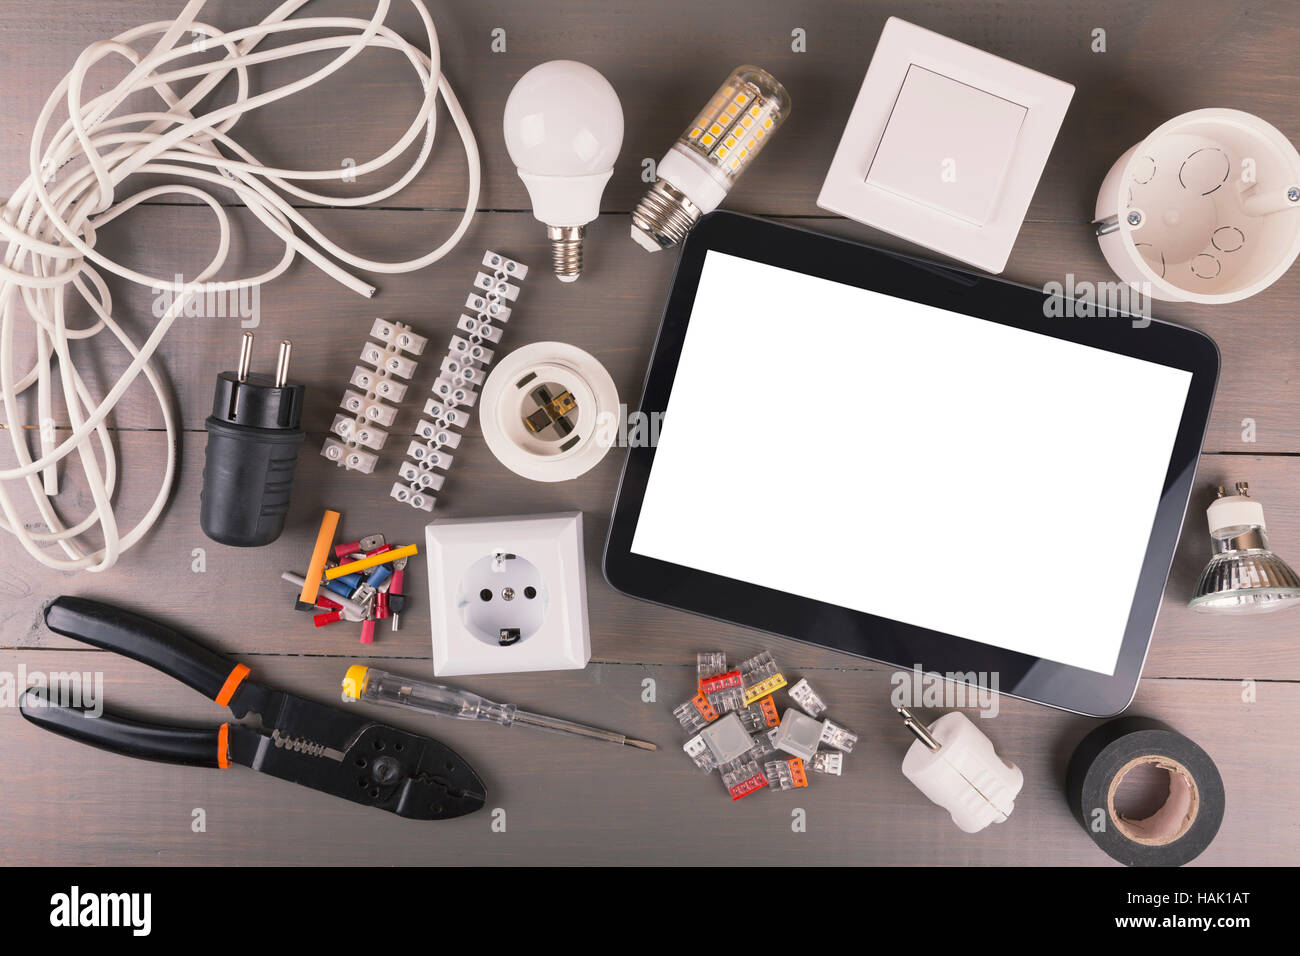 Tablette numérique vide avec des outils électriques et du matériel sur table en bois Banque D'Images